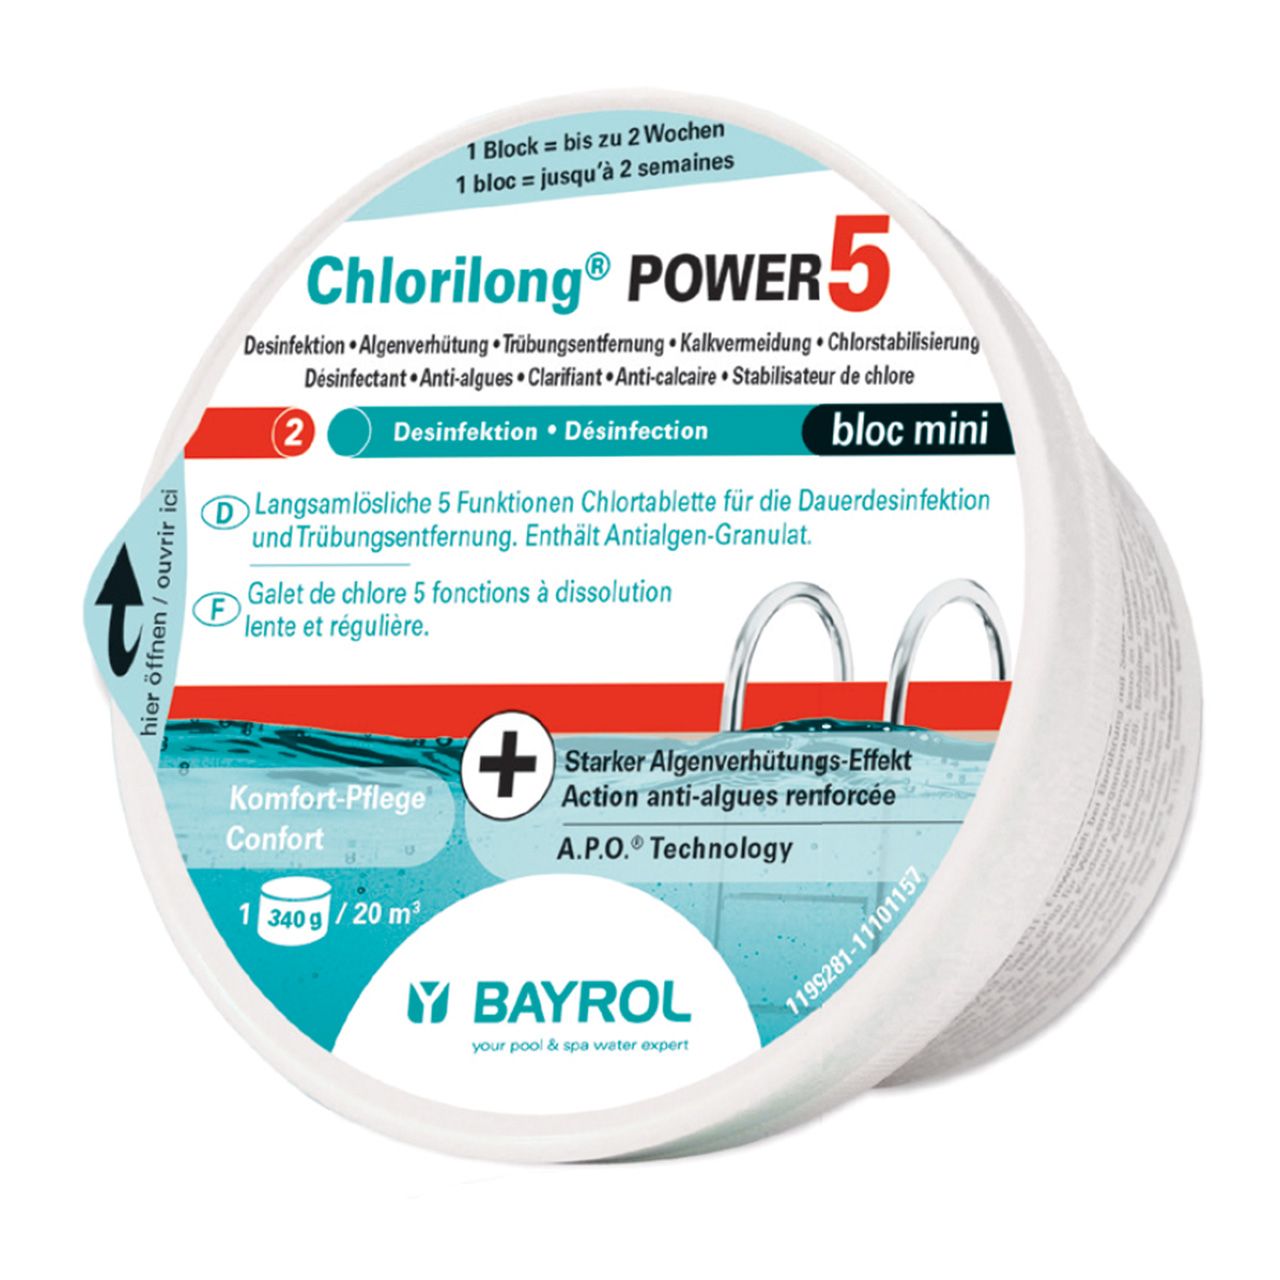 Chlorilong POWER 5 Bloc mini